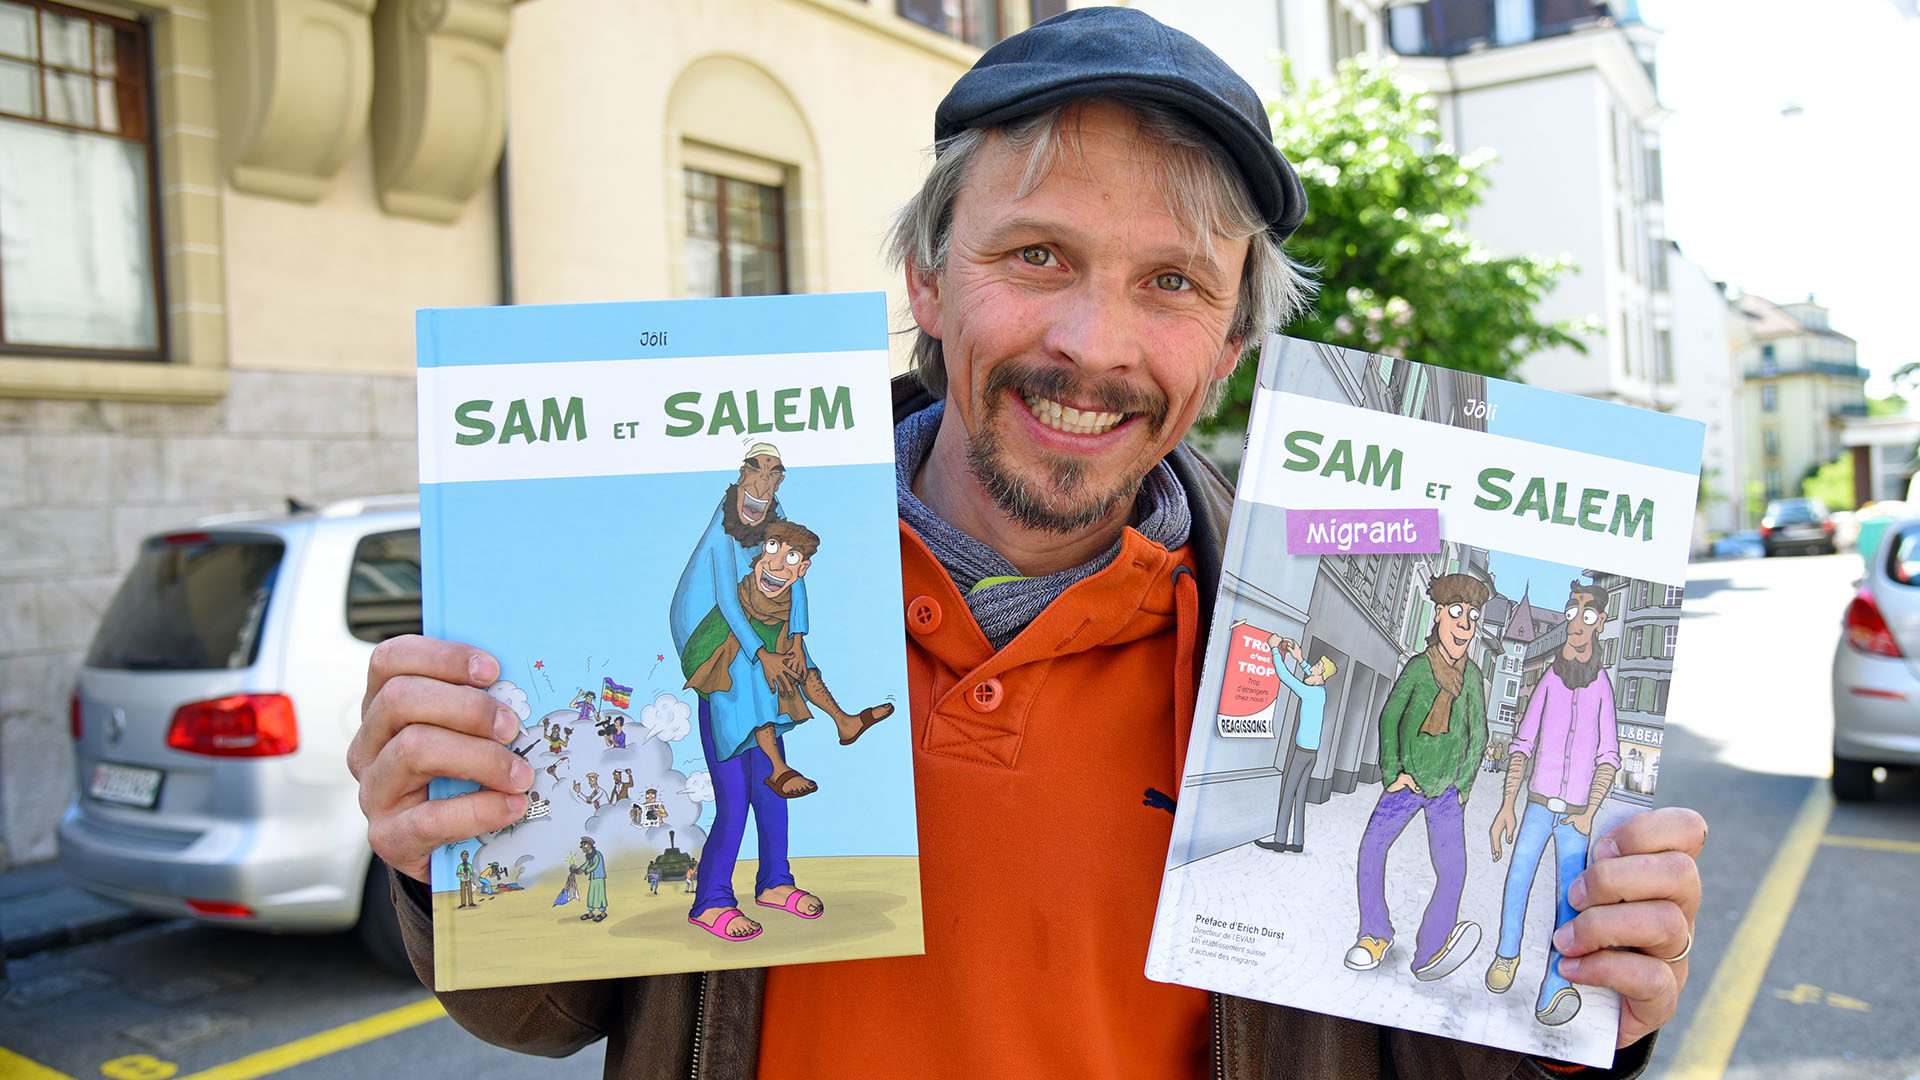 Sam et Salem, migrant: deuxième volet d'une BD engagée, par le dessinateur chrétien Jôli | © Grégory Roth